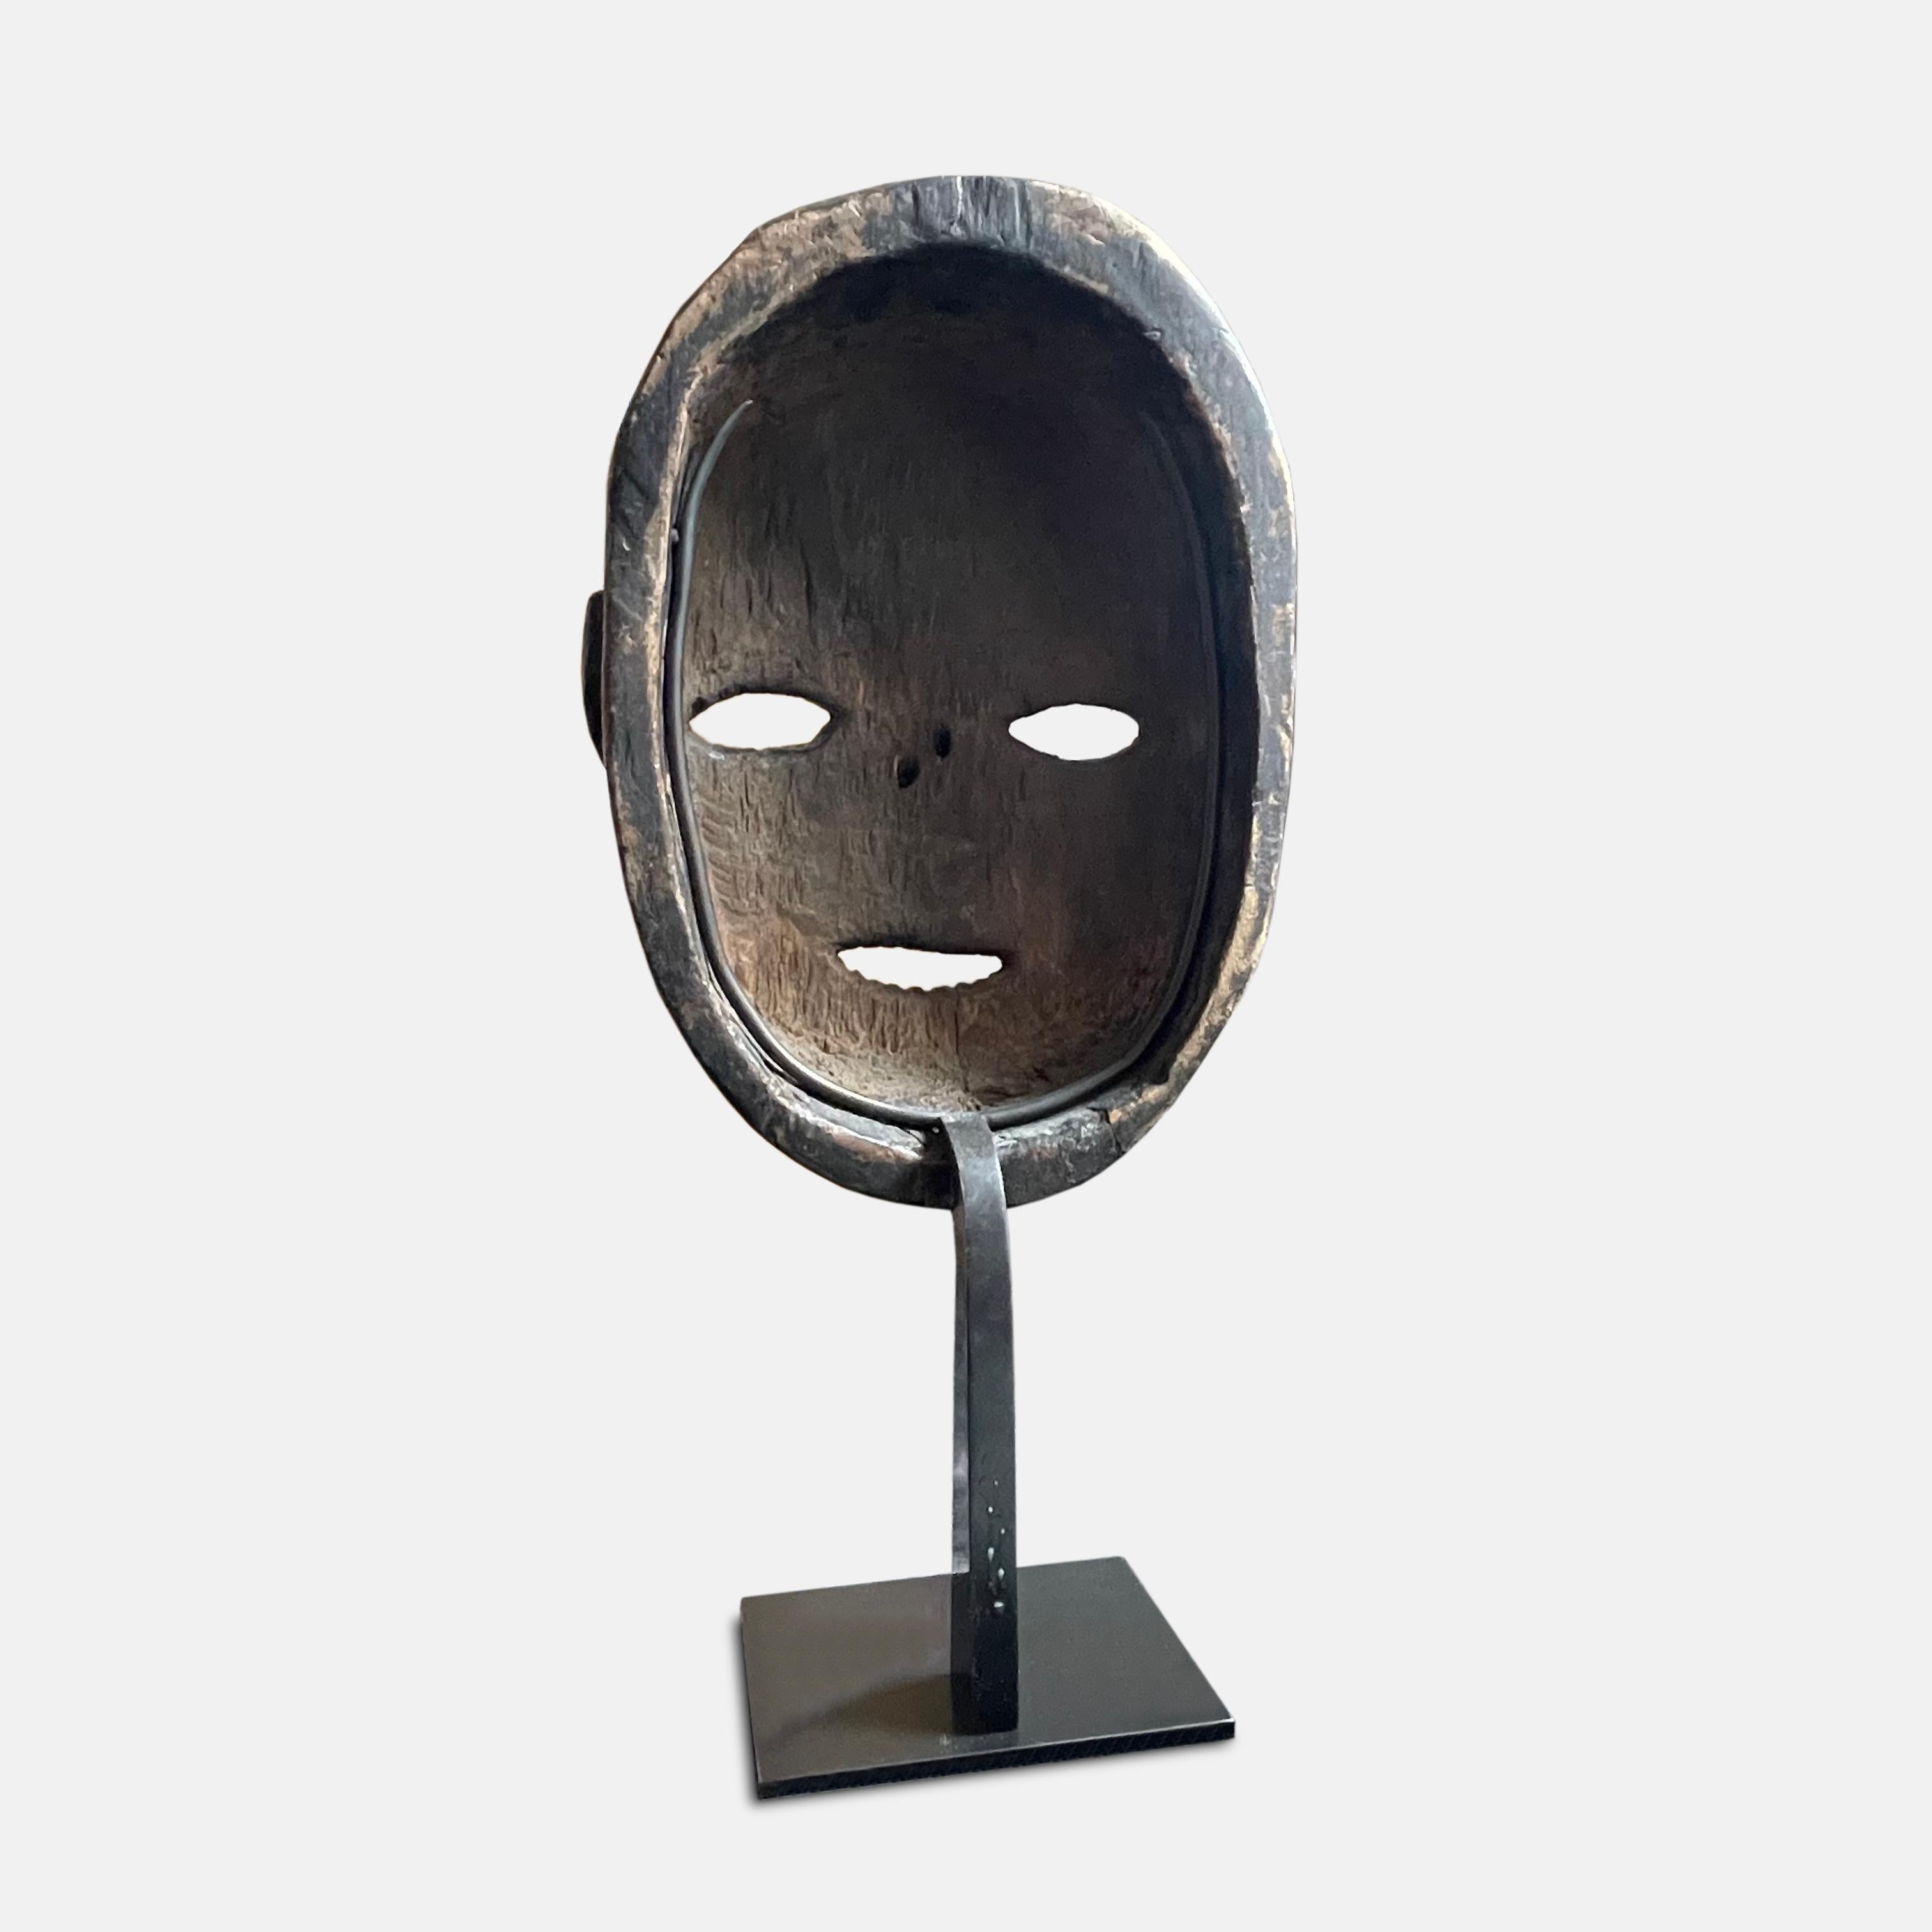 Máscara tribal congoleña Ngbaka para rituales de iniciación, principios del siglo XX Congoleño en venta